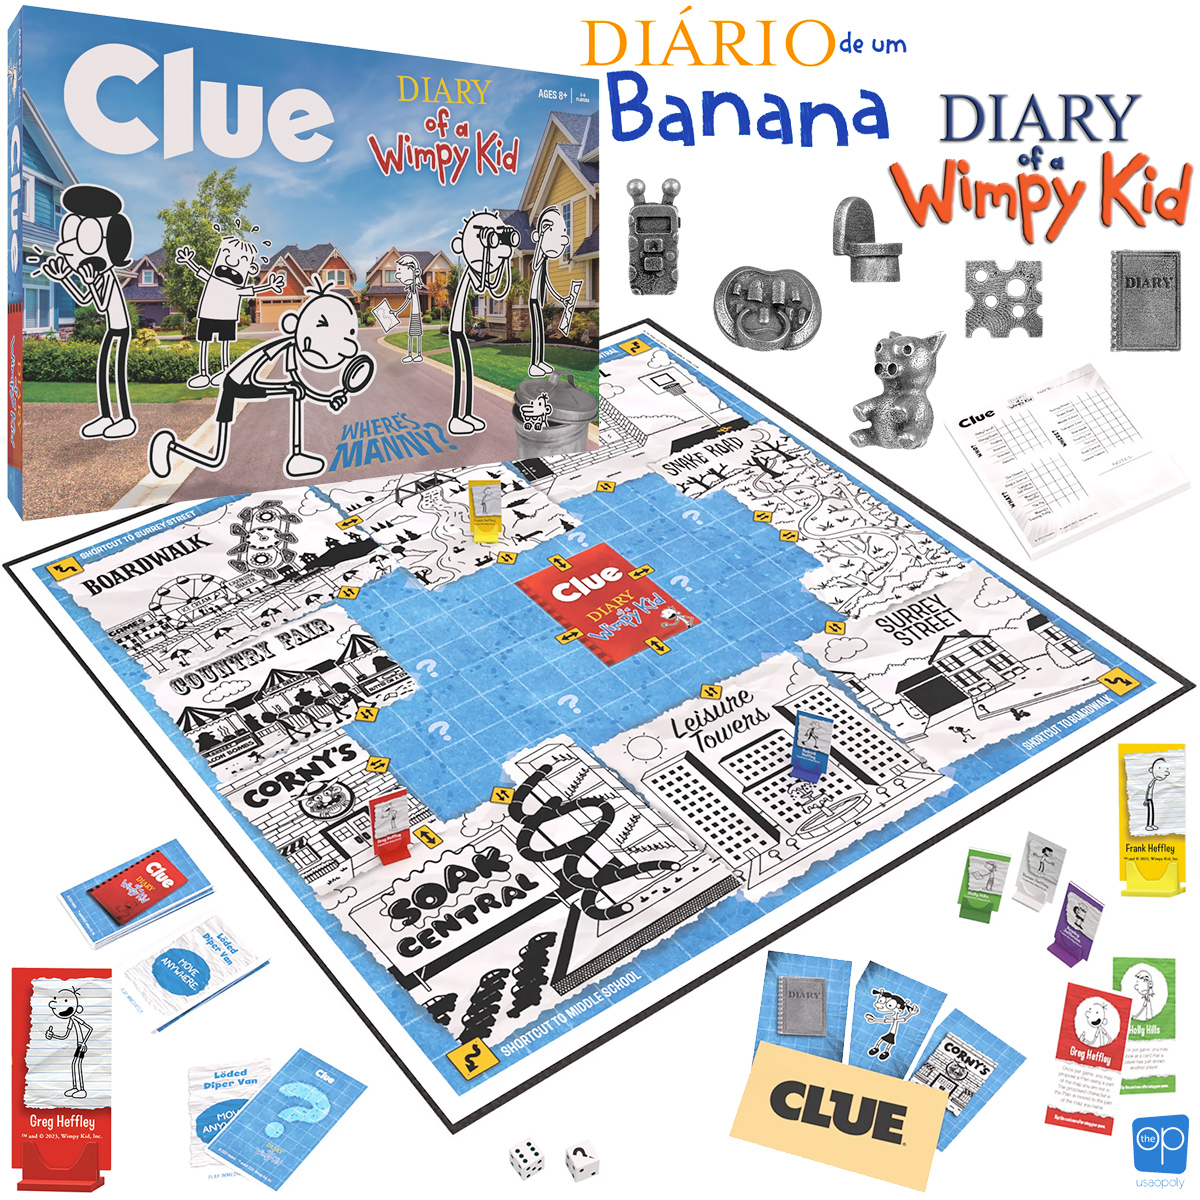 Jogo Diário de um Banana Clue (Detetive) da Série de Livros de Jeff Kinney